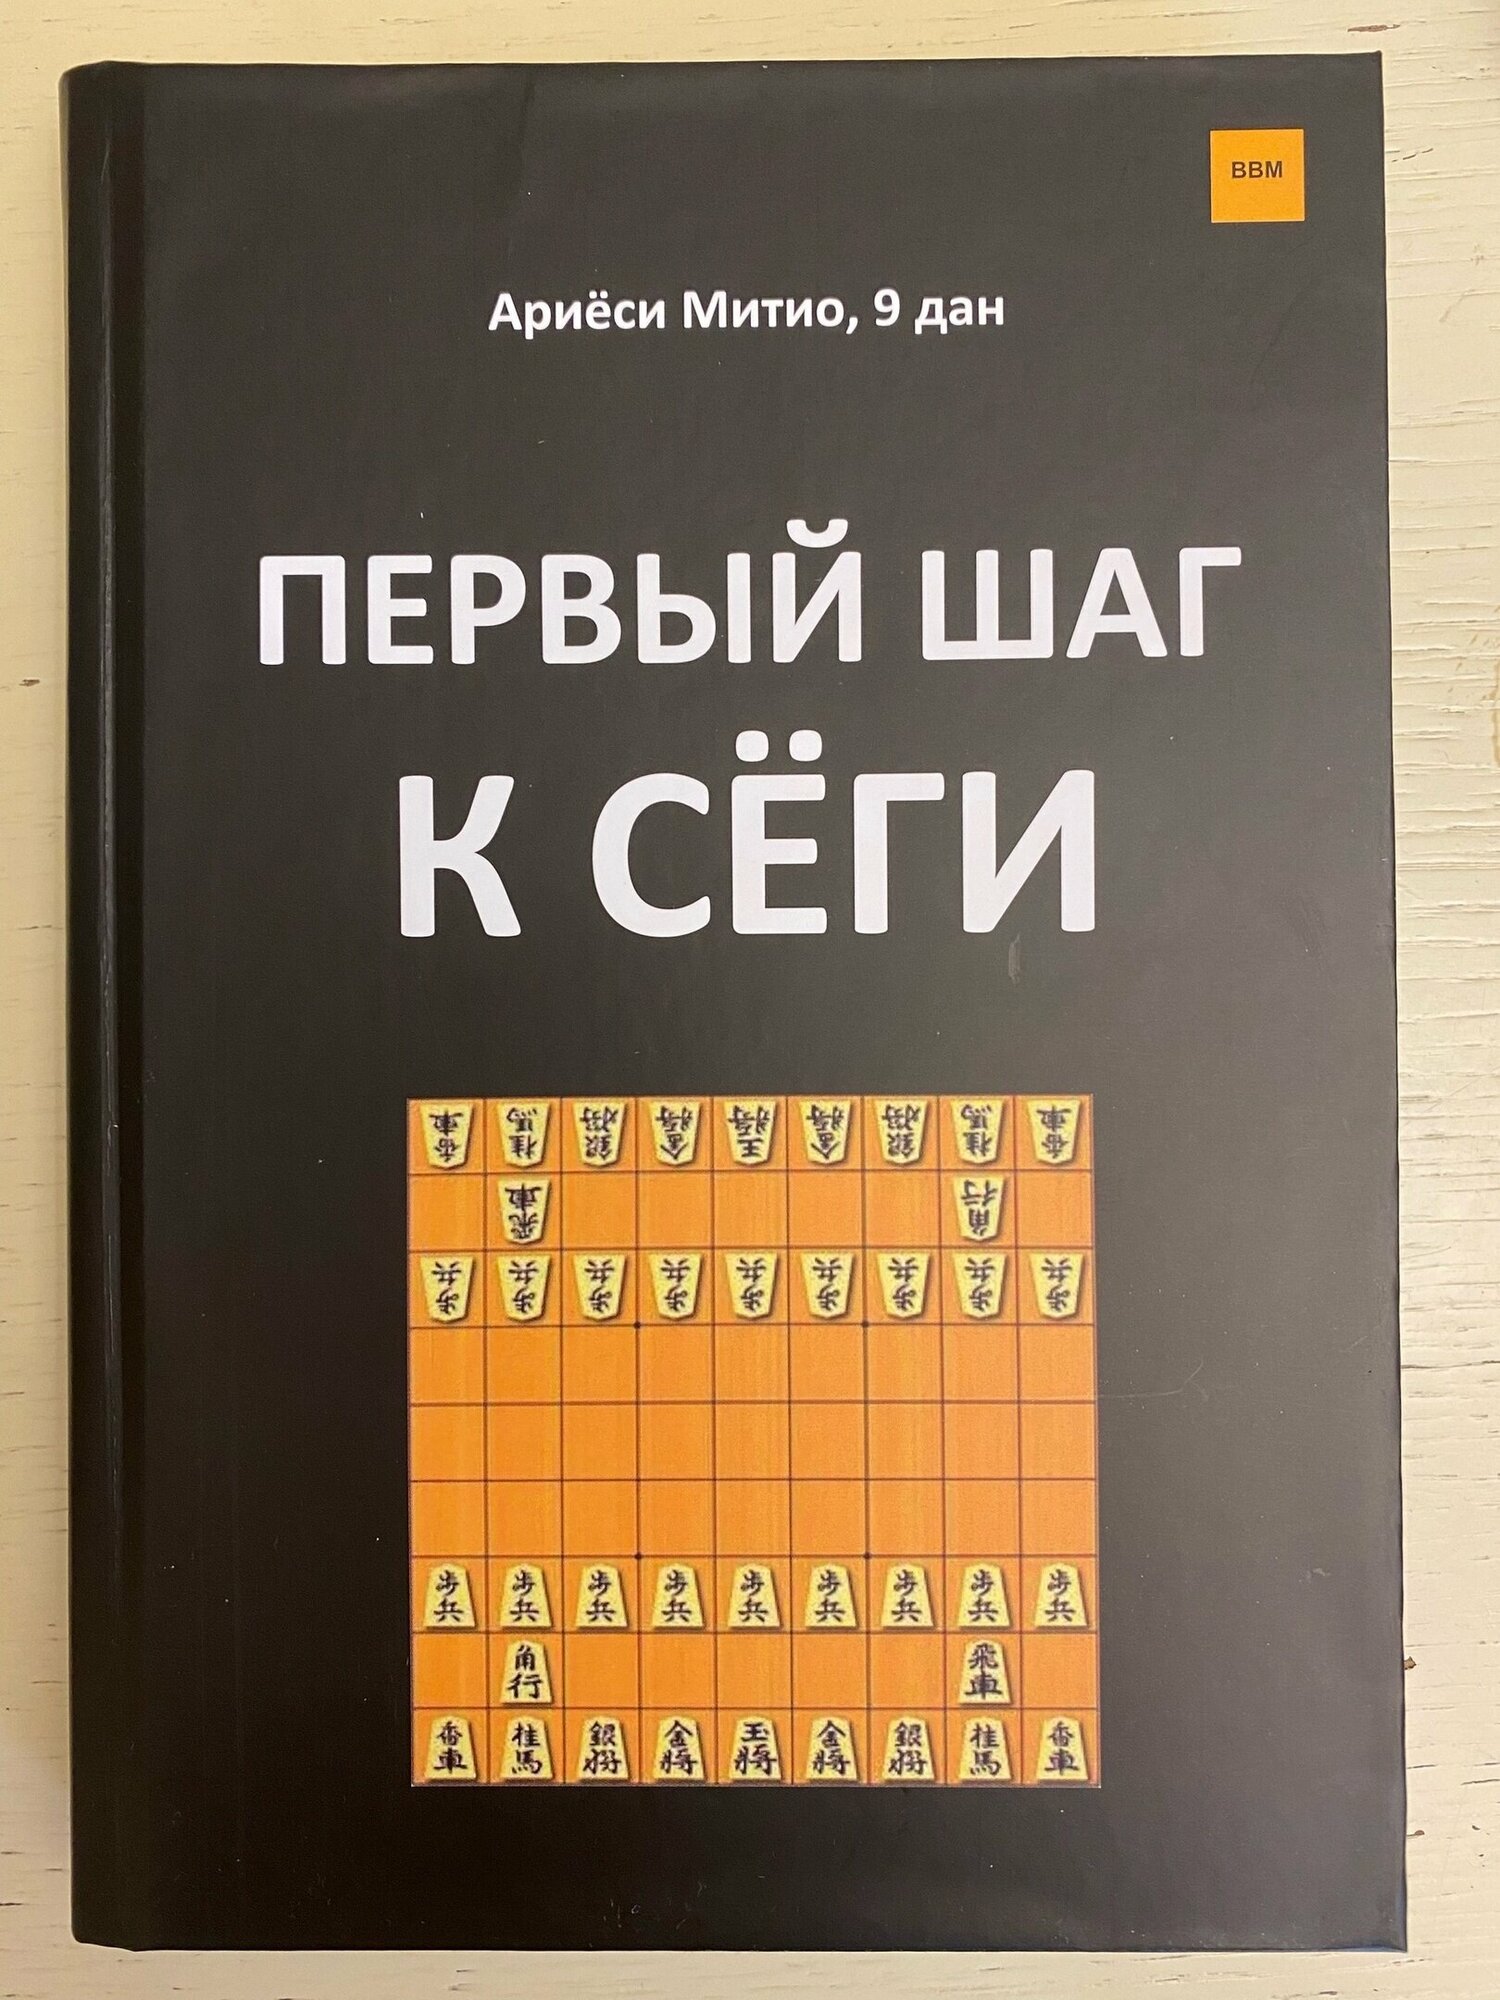 Книга по японским шахматам Сеги " Первый шаг к сеги ", автор Ариеси Митио.